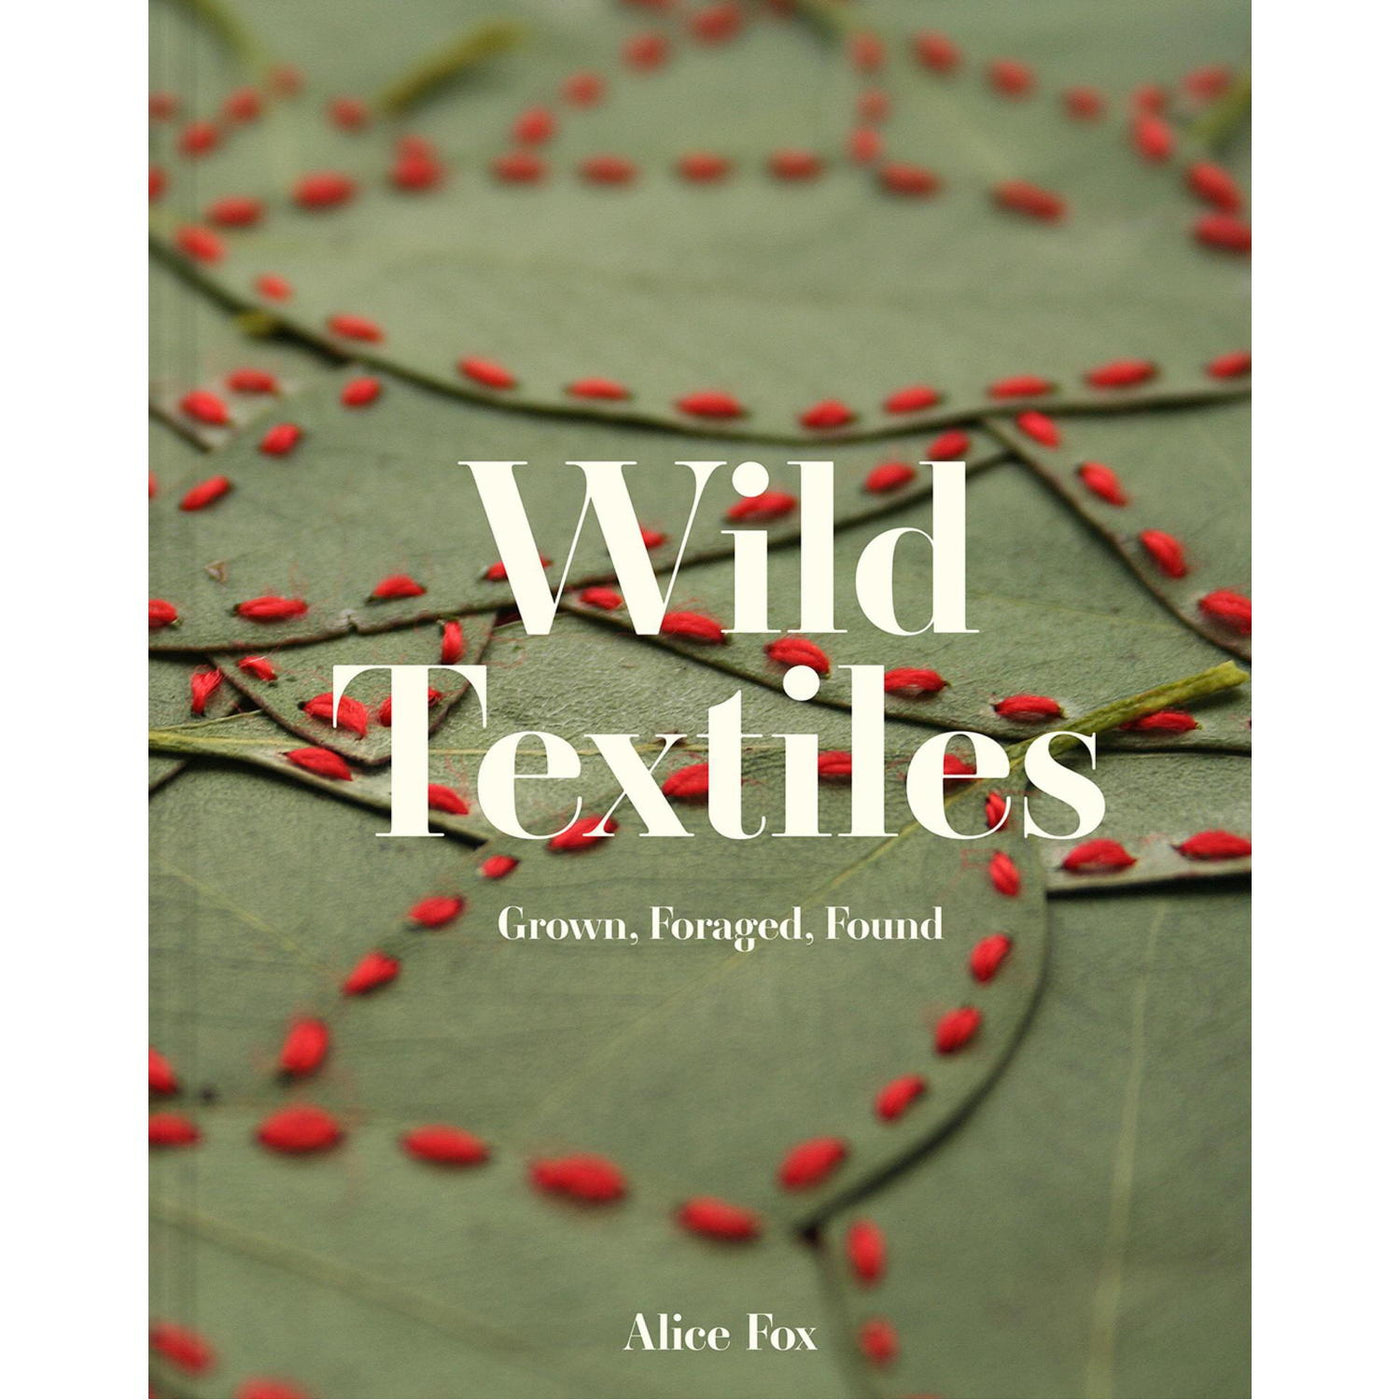 Wild Textiles Grown, Foraged, Found Book by Alice Fox